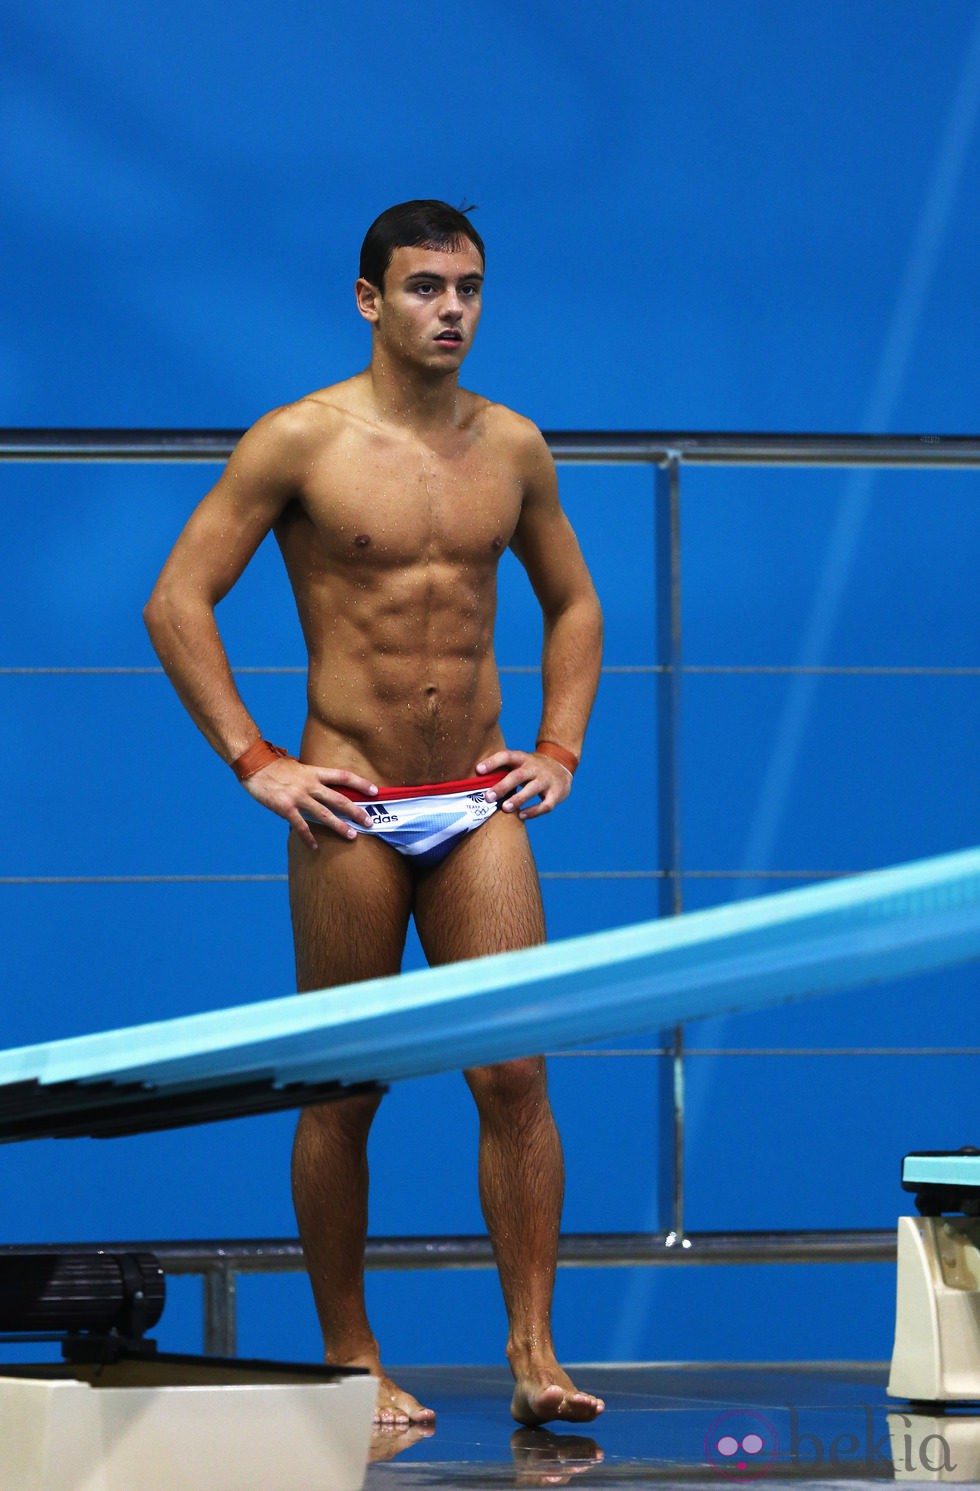 Tom Daley entrenando para los Juegos Olímpicos de Londres 2012